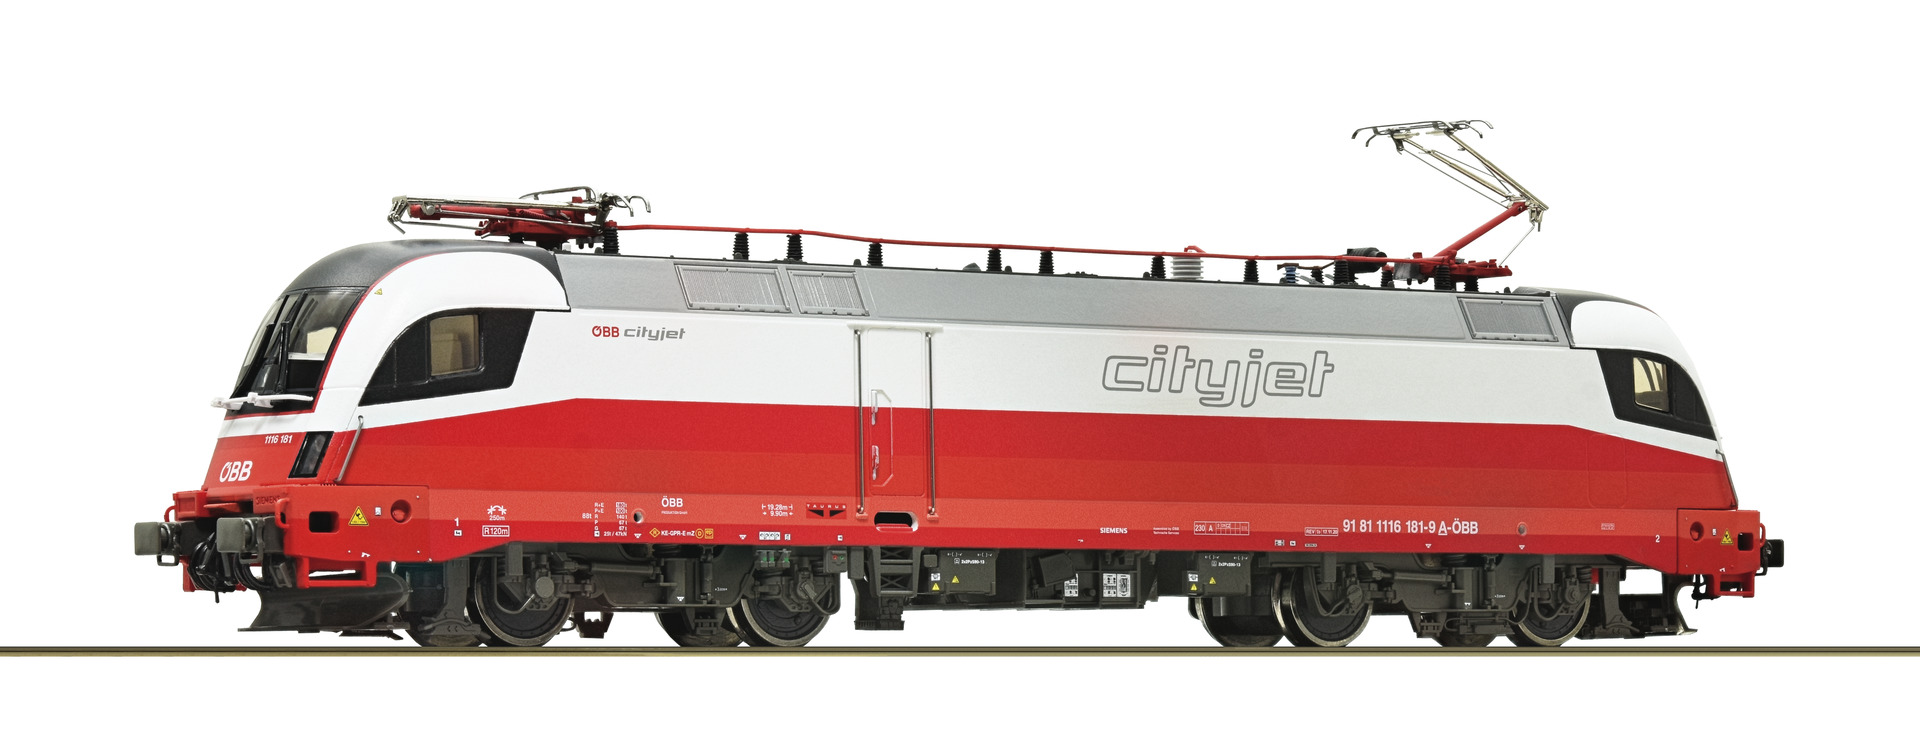 Roco 7500024  Electric locomotive 1116 181-9, ÖBB